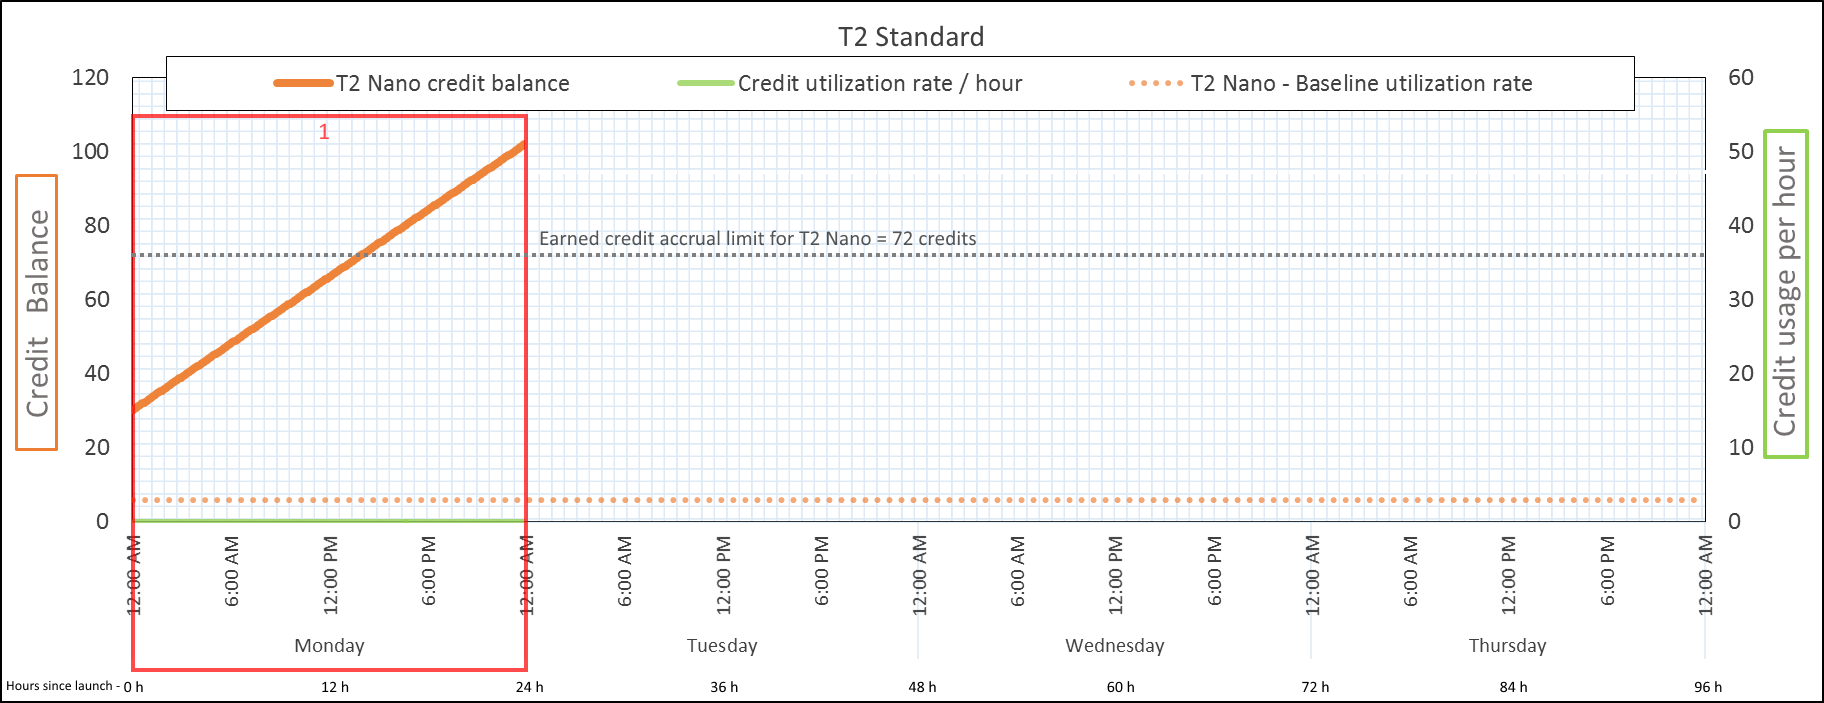 T2 標準の期間 1 では、クレジット残高は 102 クレジットです。